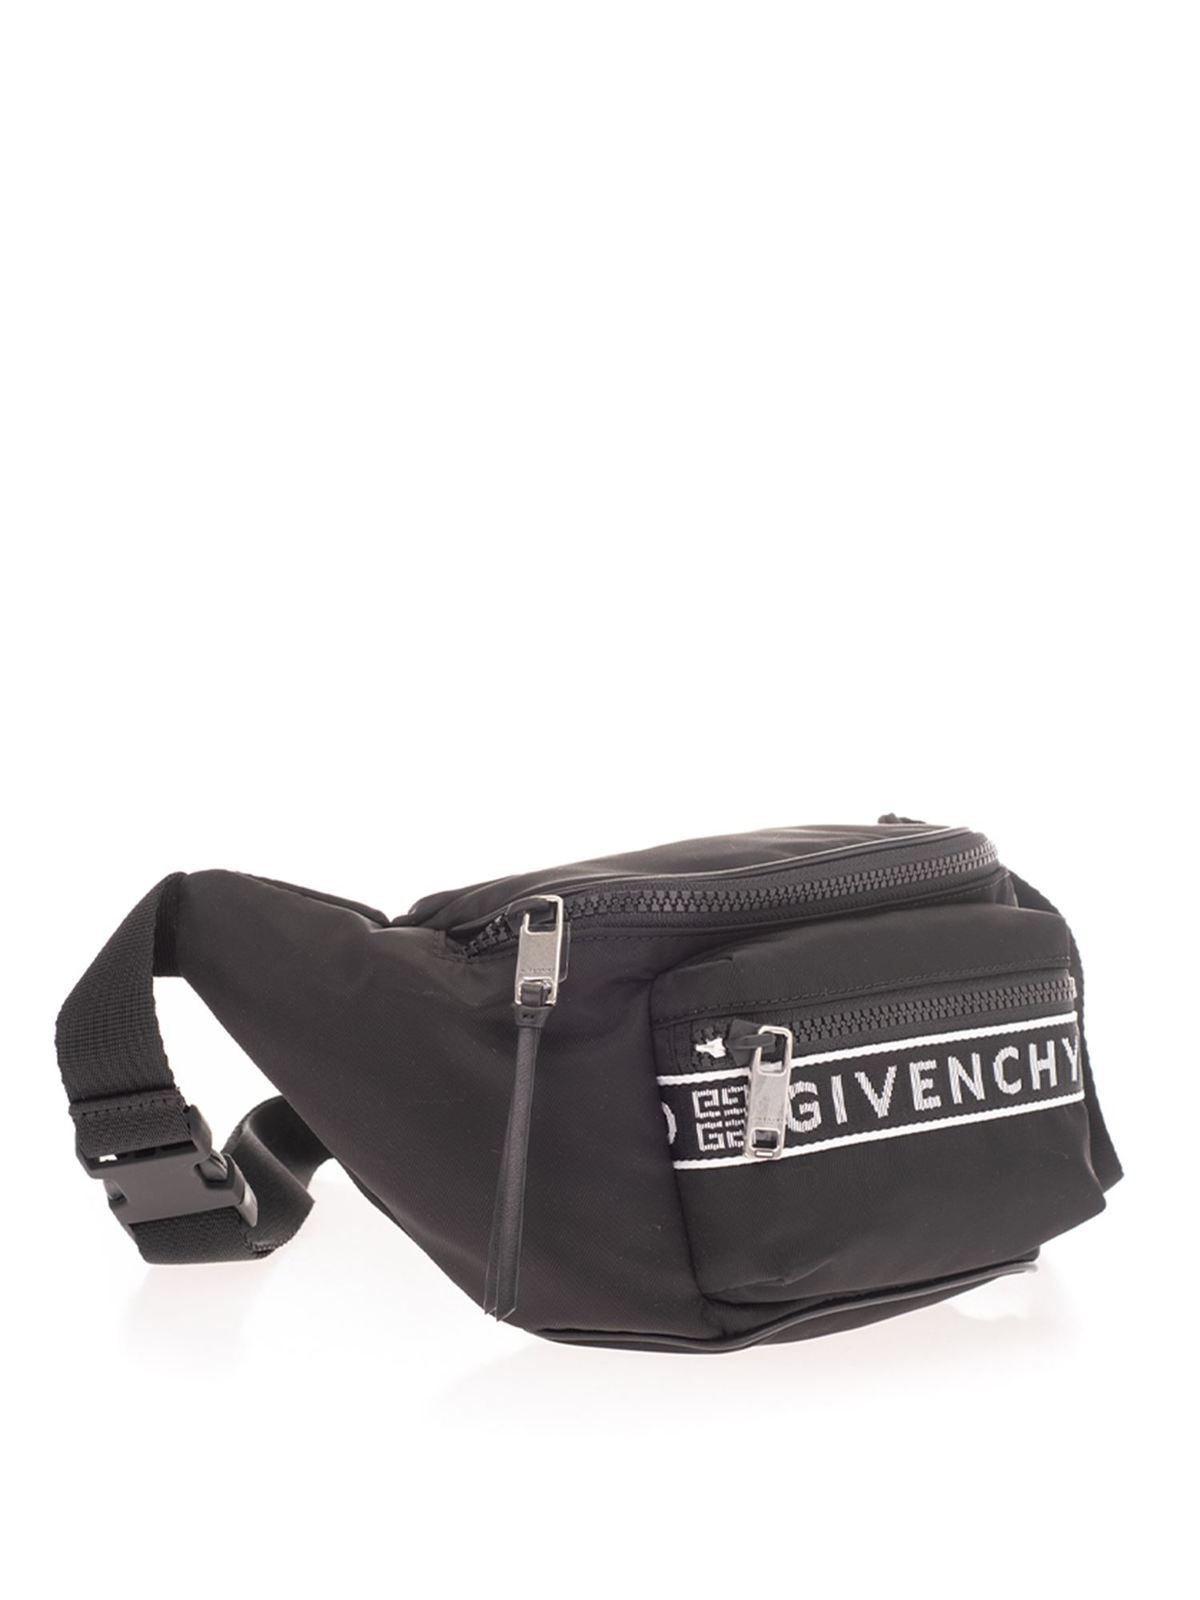 givenchy light 3 belt bag